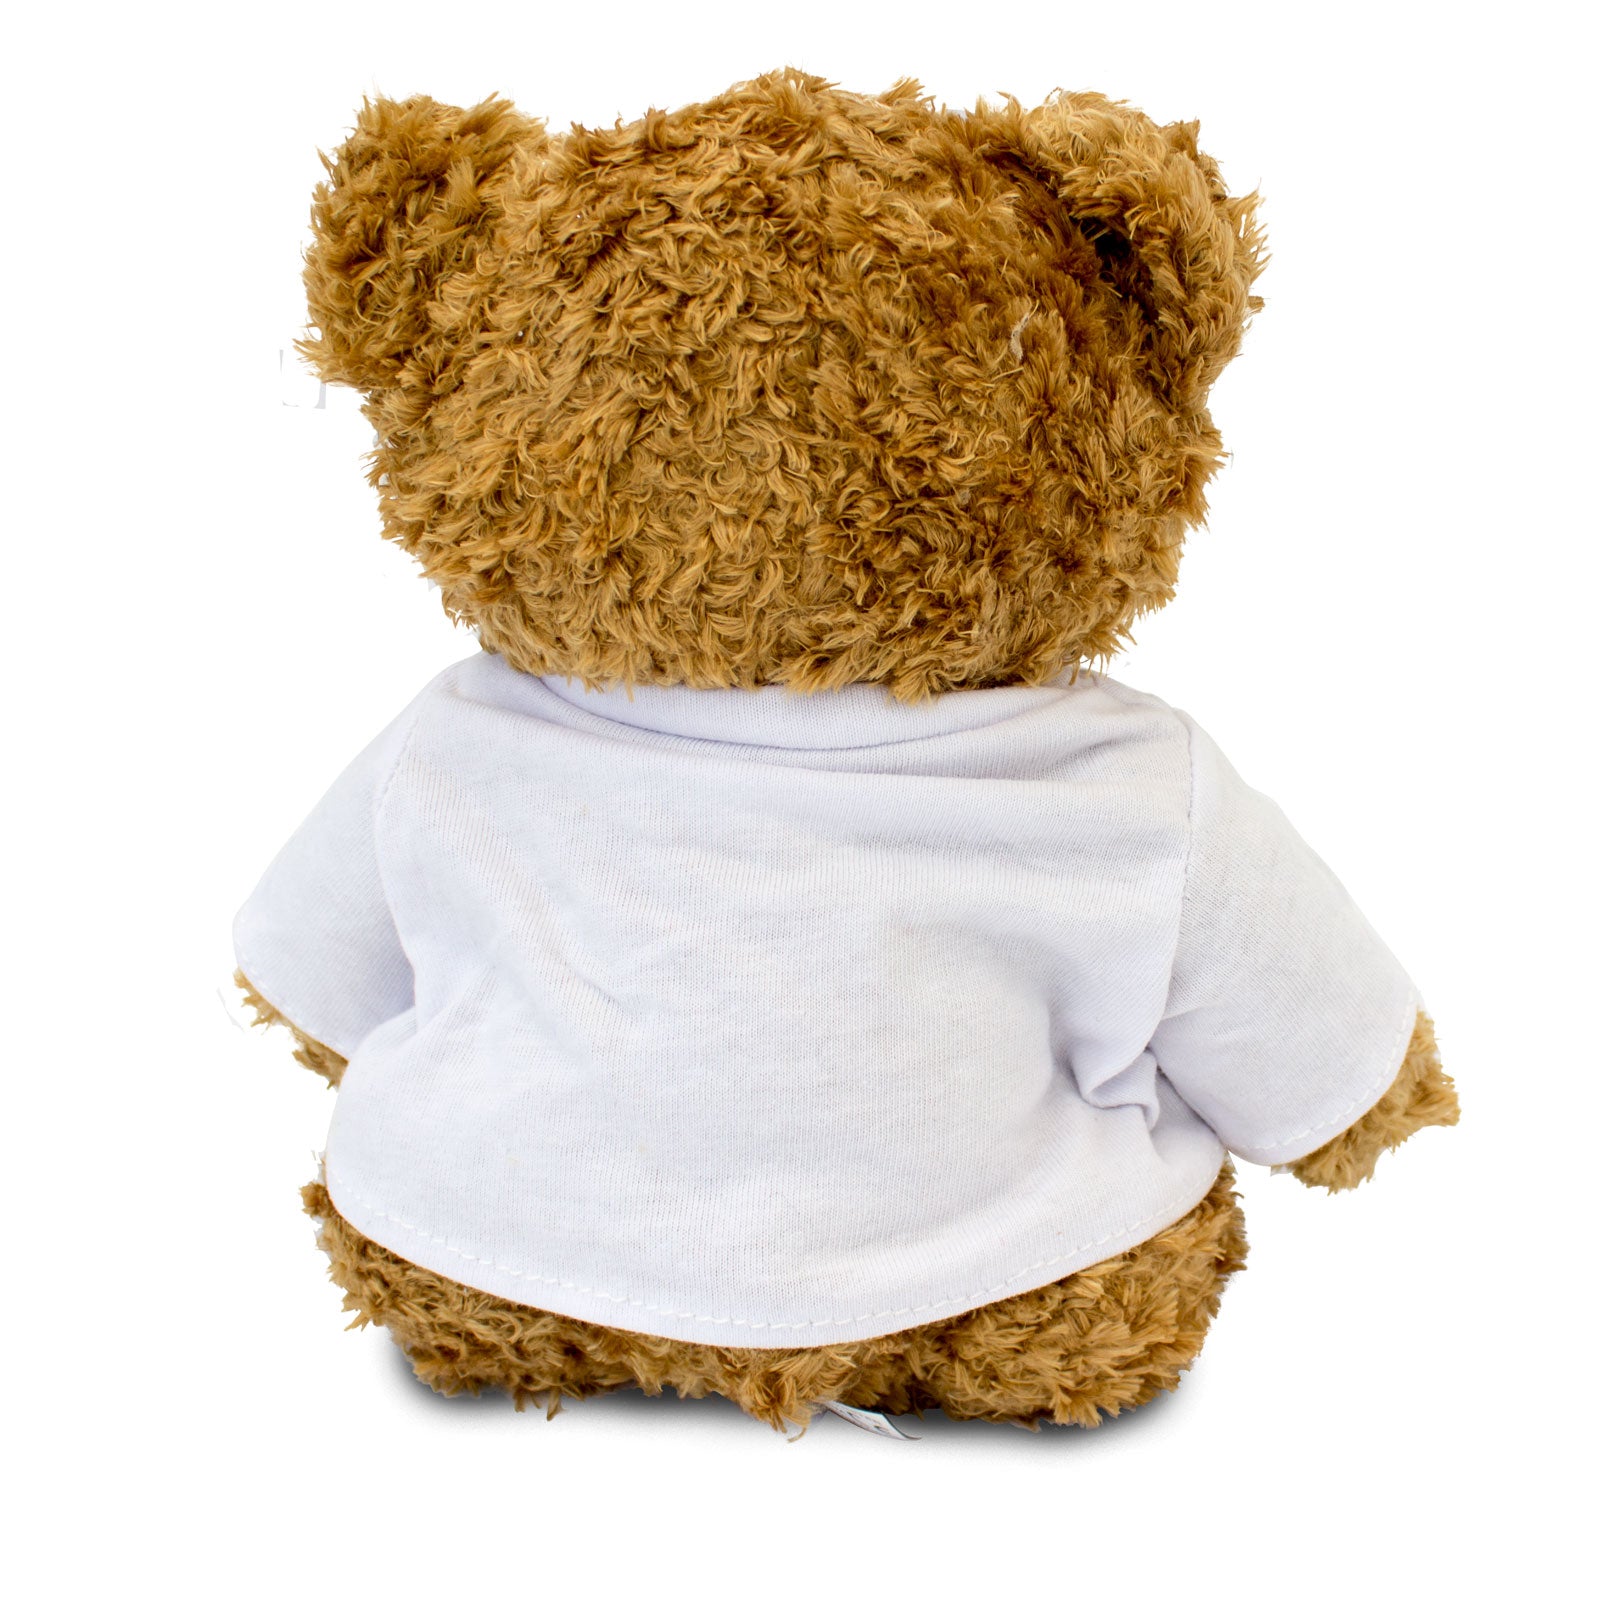 Get Well Soon Amadeus - Teddy Bear